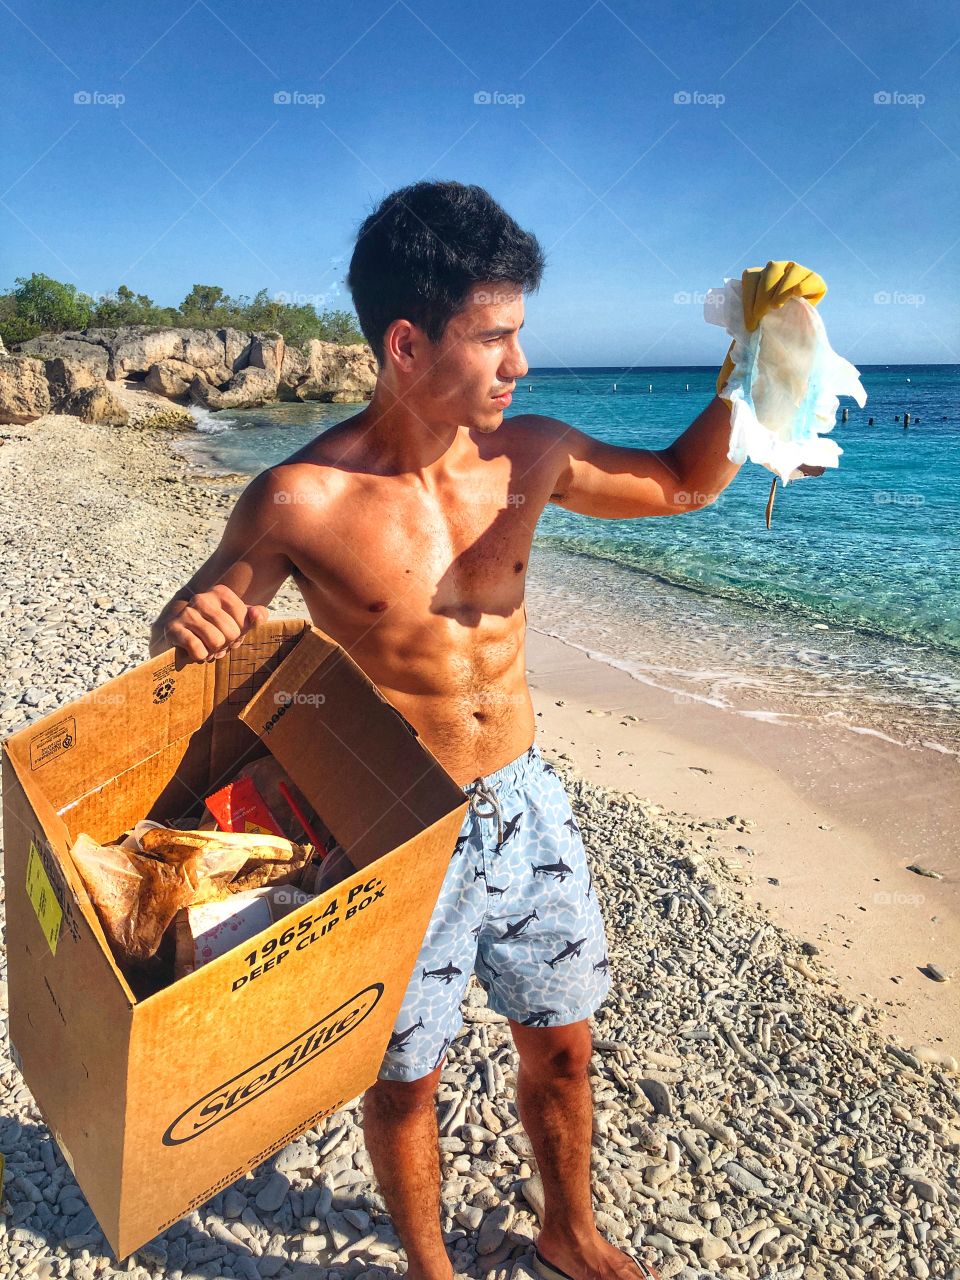 Beach trash